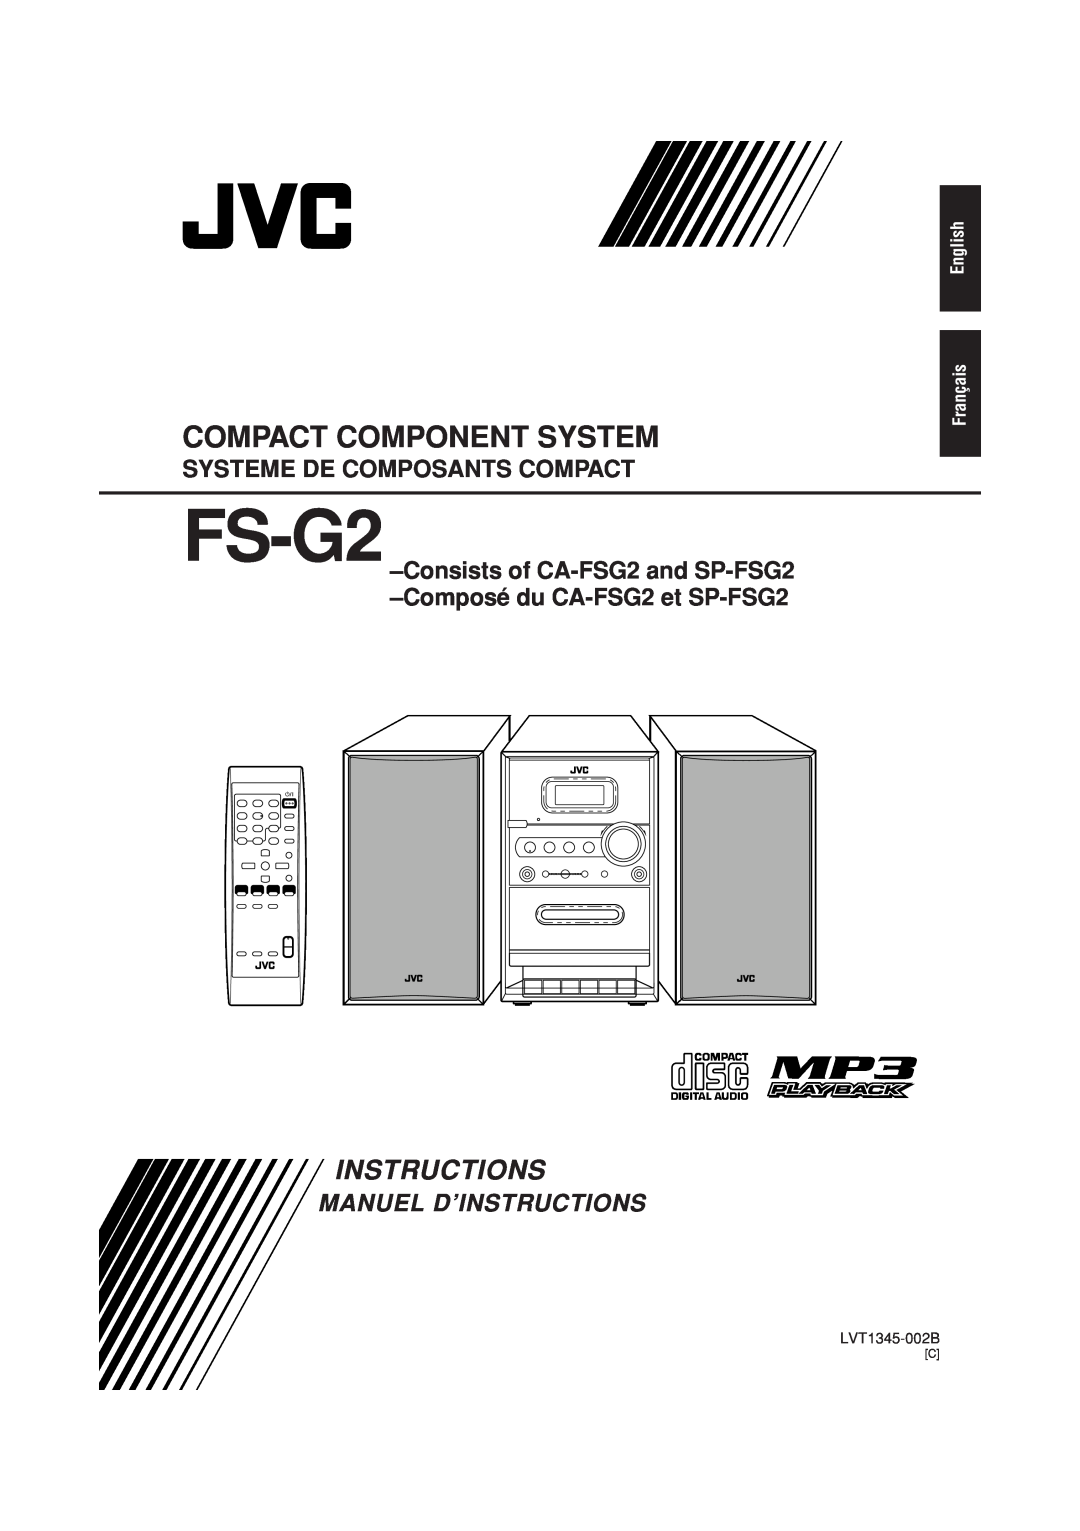 JVC FS-G2 manual Systeme De Composants Compact, English Français, LVT1345-002B, Compact Component System, Instructions 